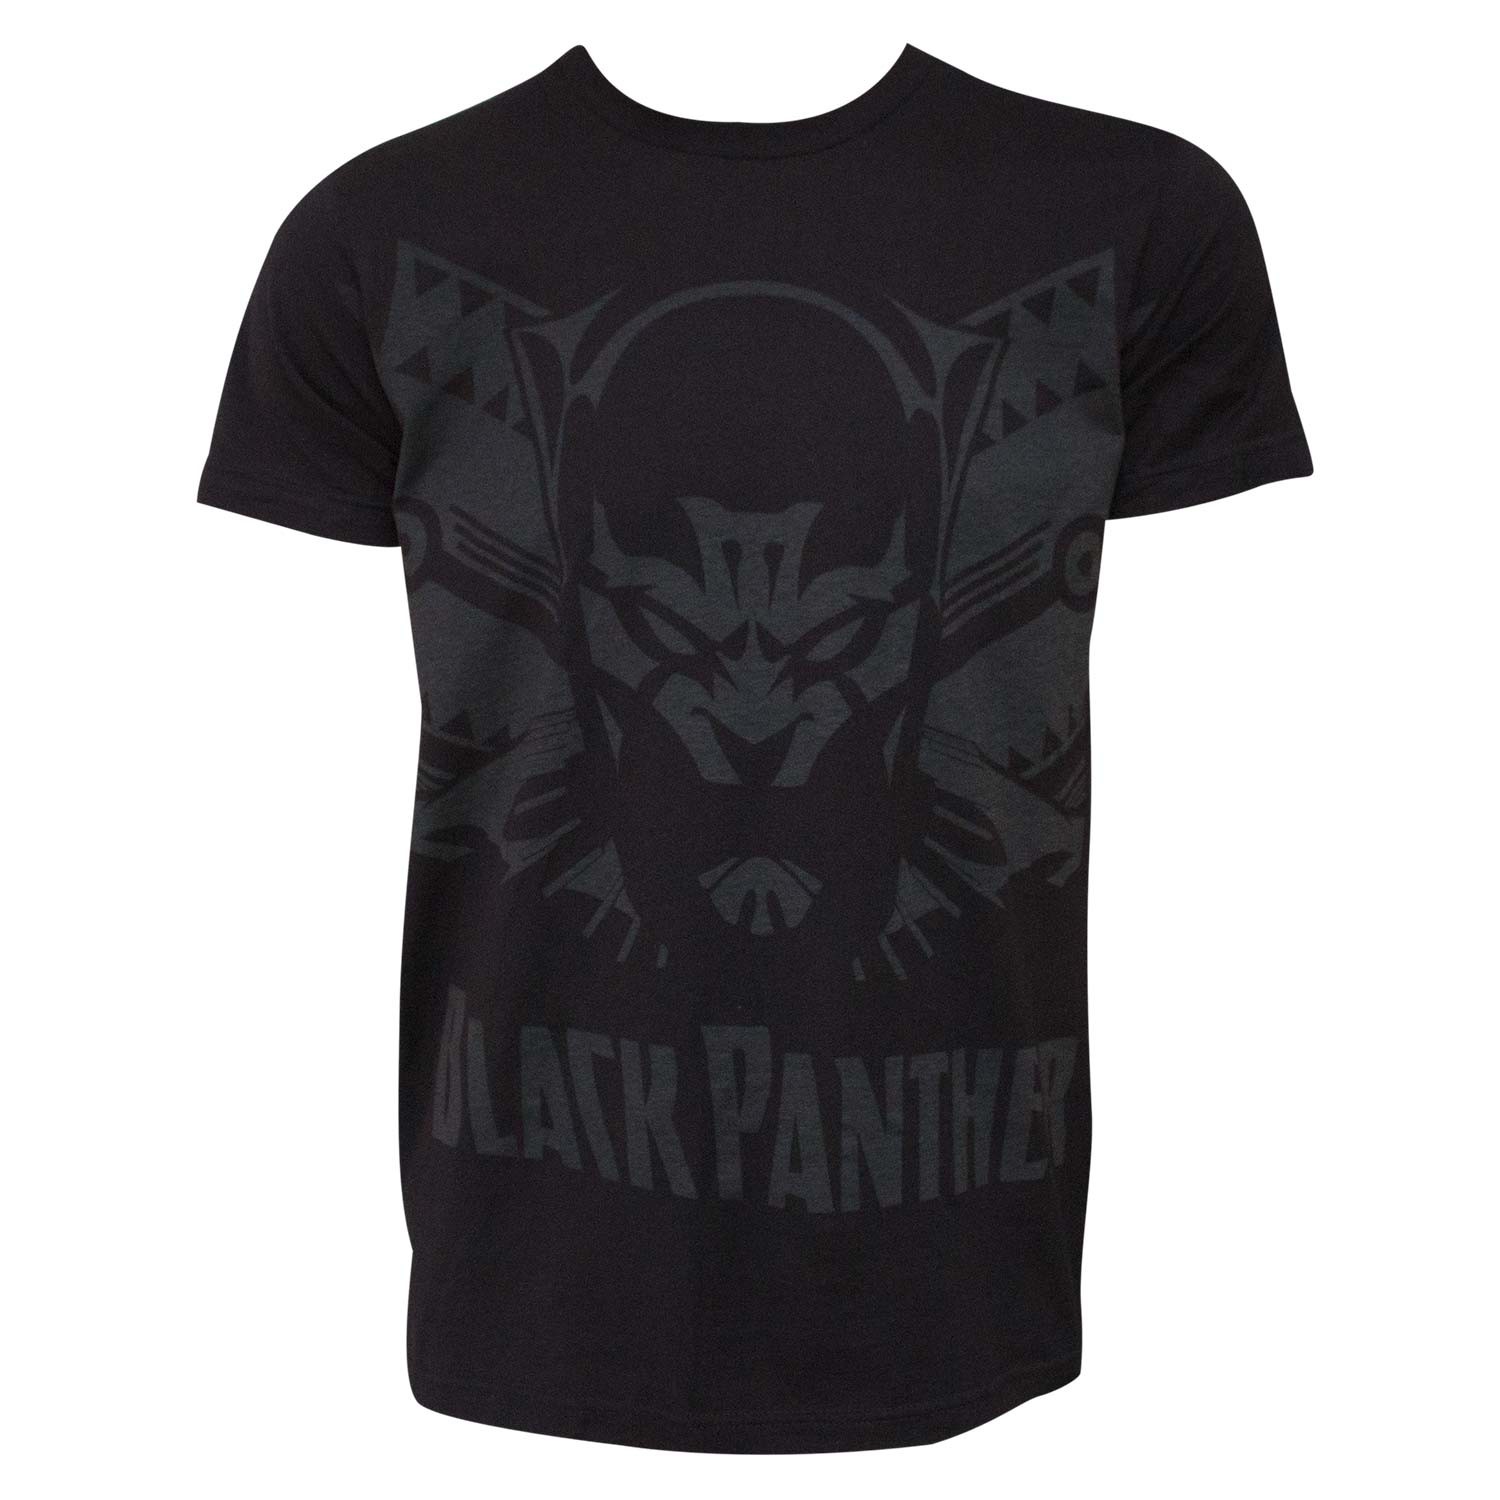 Black Panther Shadow Men's Black T-Shirt